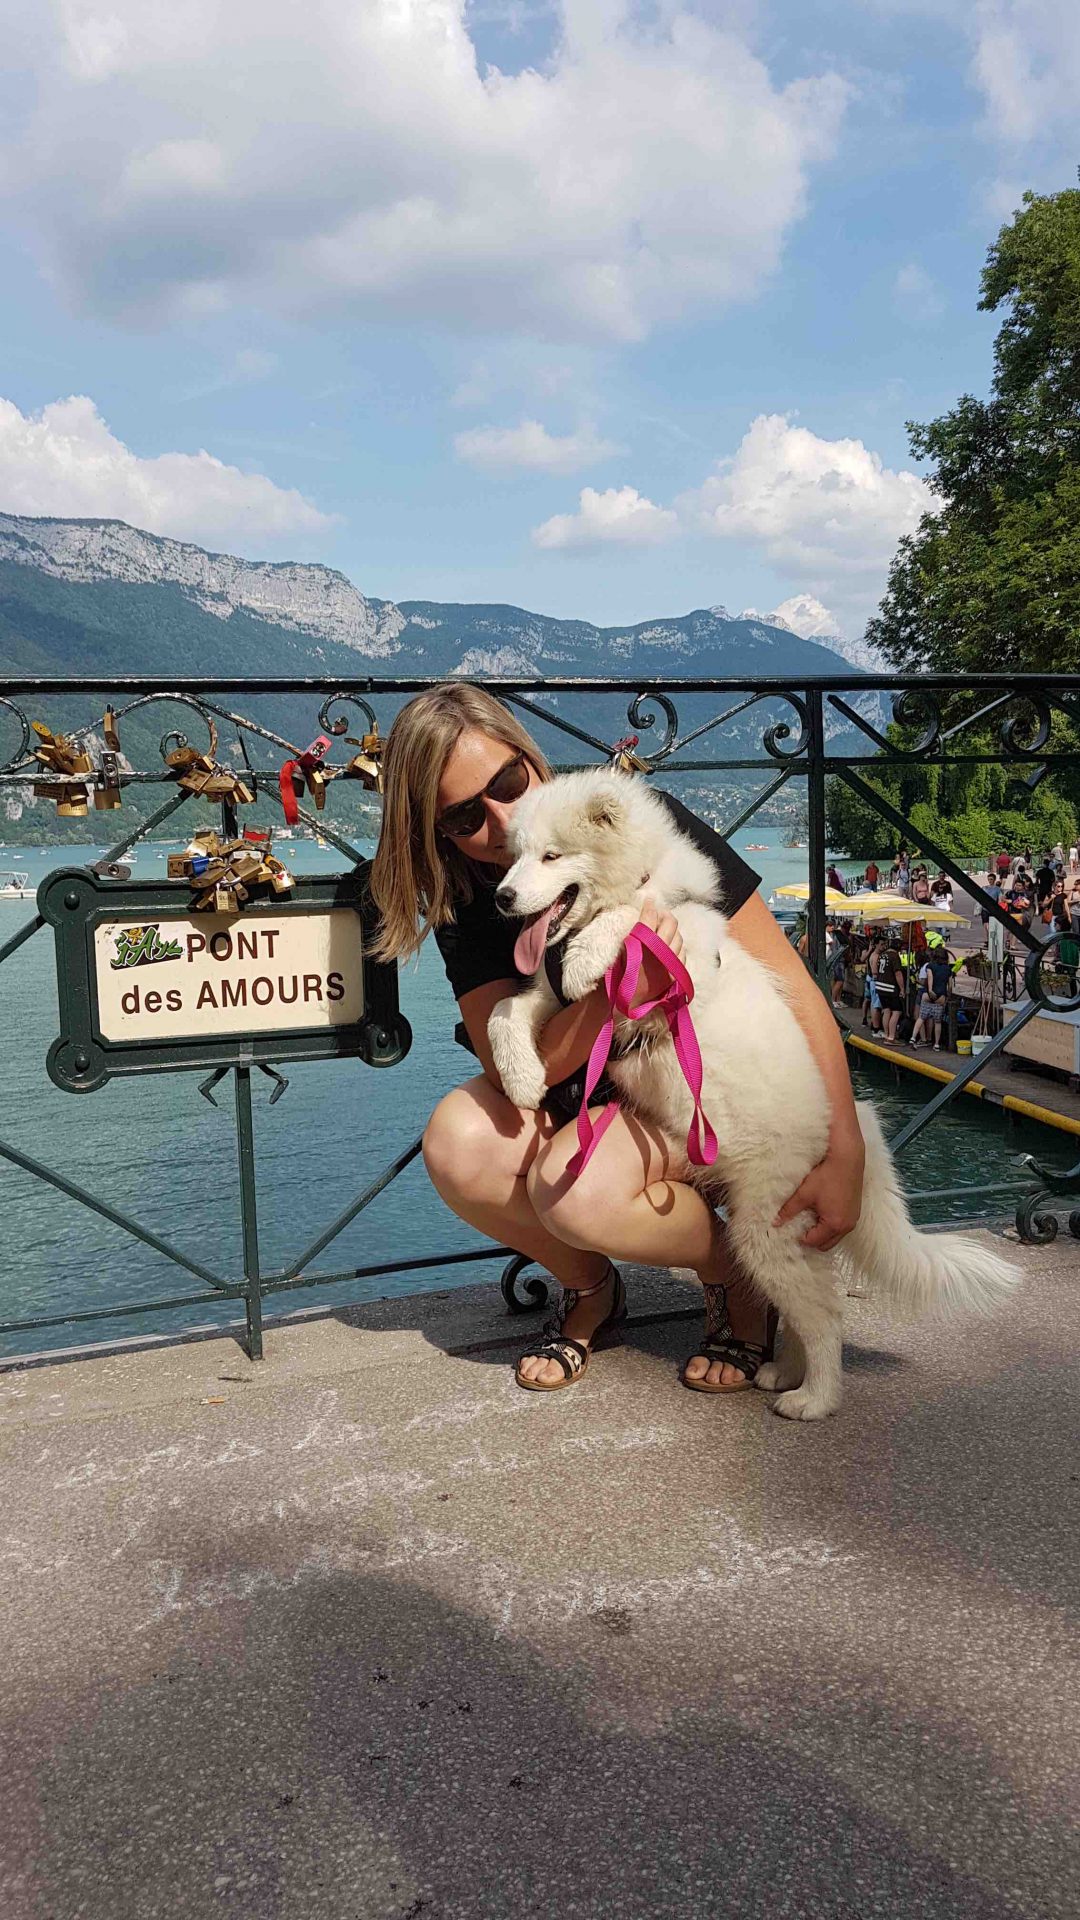 Ontdek Annecy voor een vakantie met uw hond!